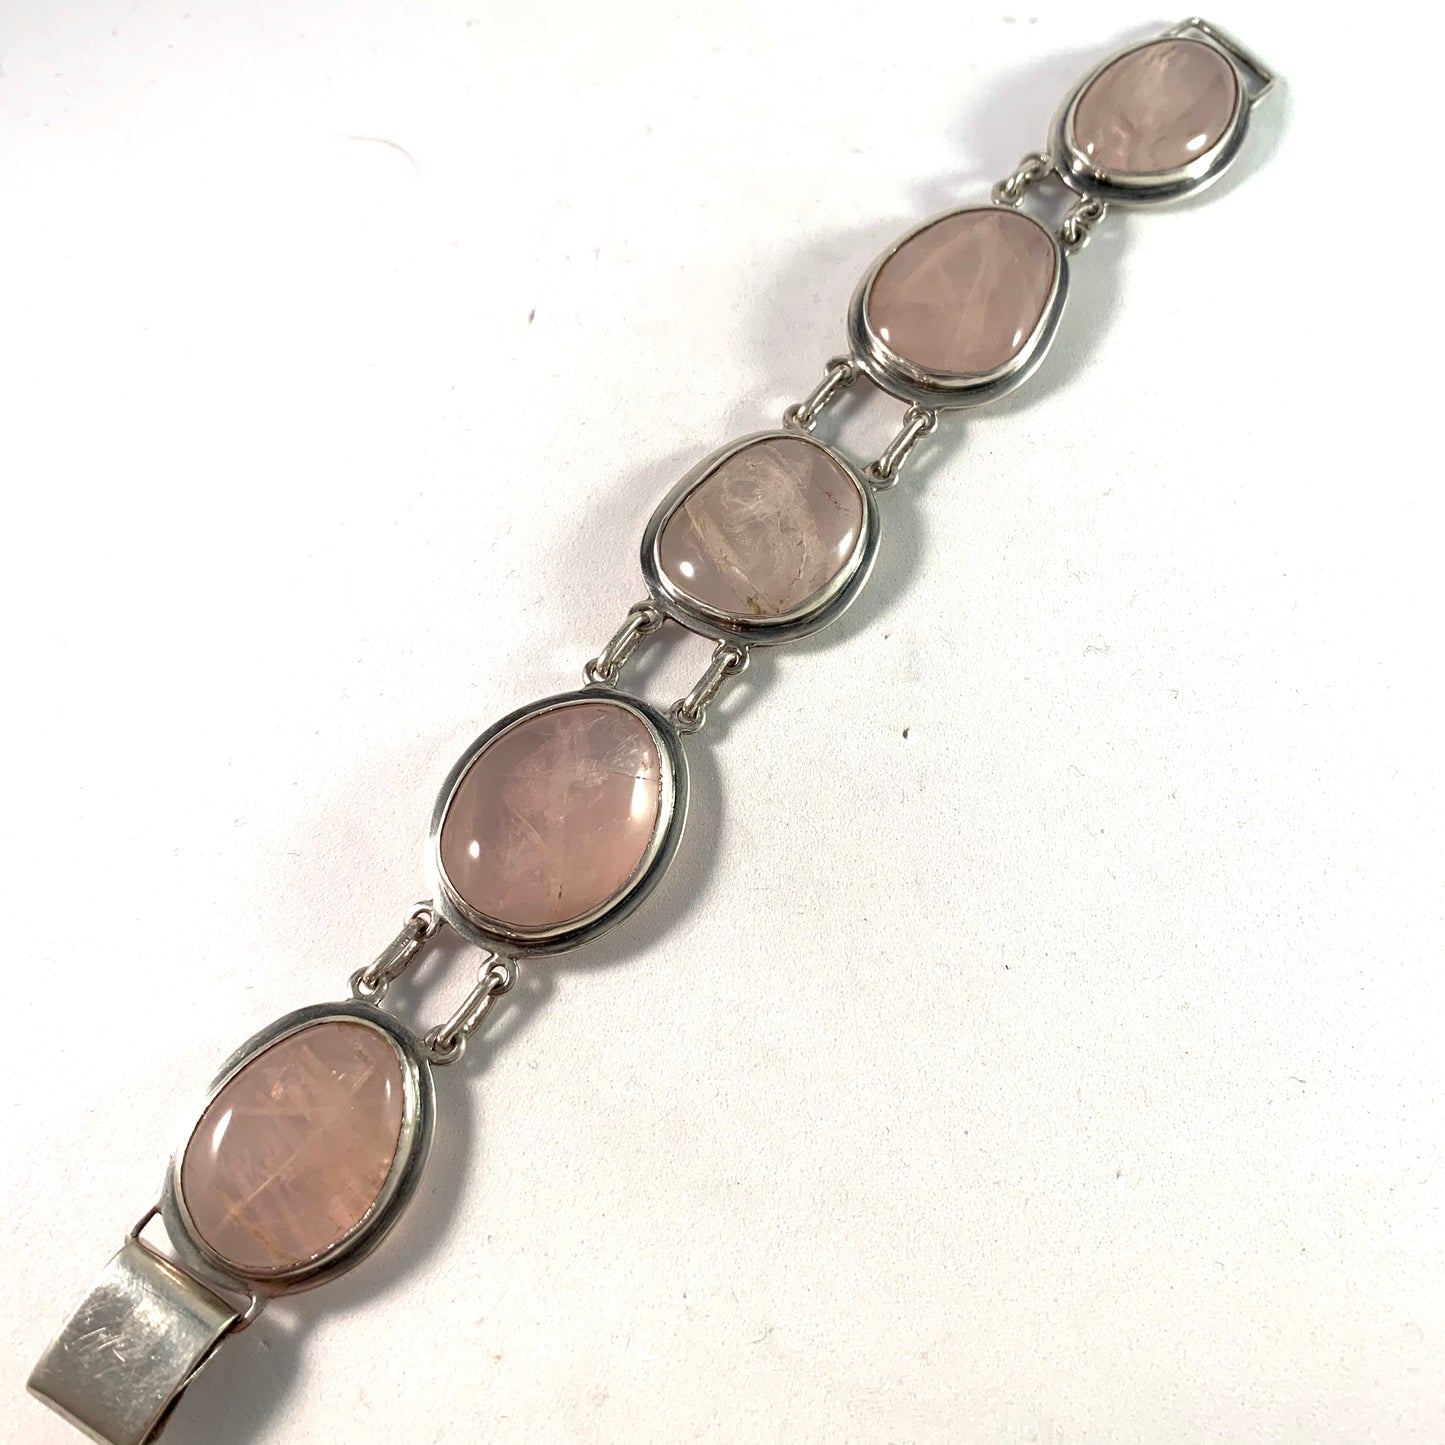 A I E, Sweden year 1966 Large Sterling Silver Rose Quartz Bracelet